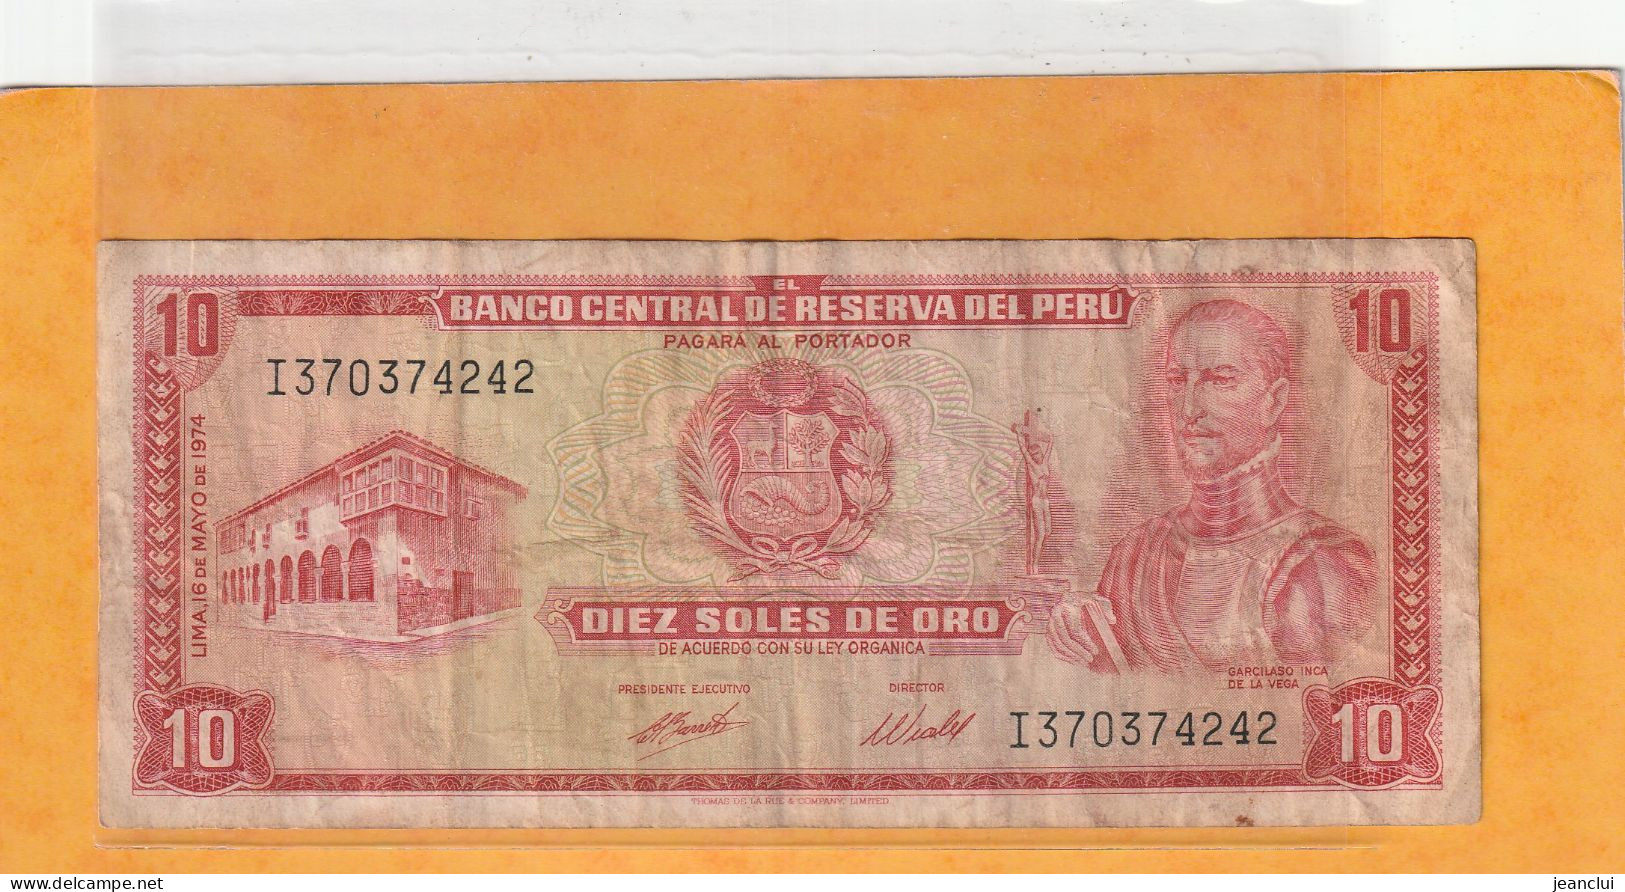 BANCO CENTRAL DE RESERVA DEL PERU .  10 SOLES DE ORO  .  16 DE MAYO DE 1974  . N°  I 3703742 .  2 SCANNES  .  ETAT USITE - Perú